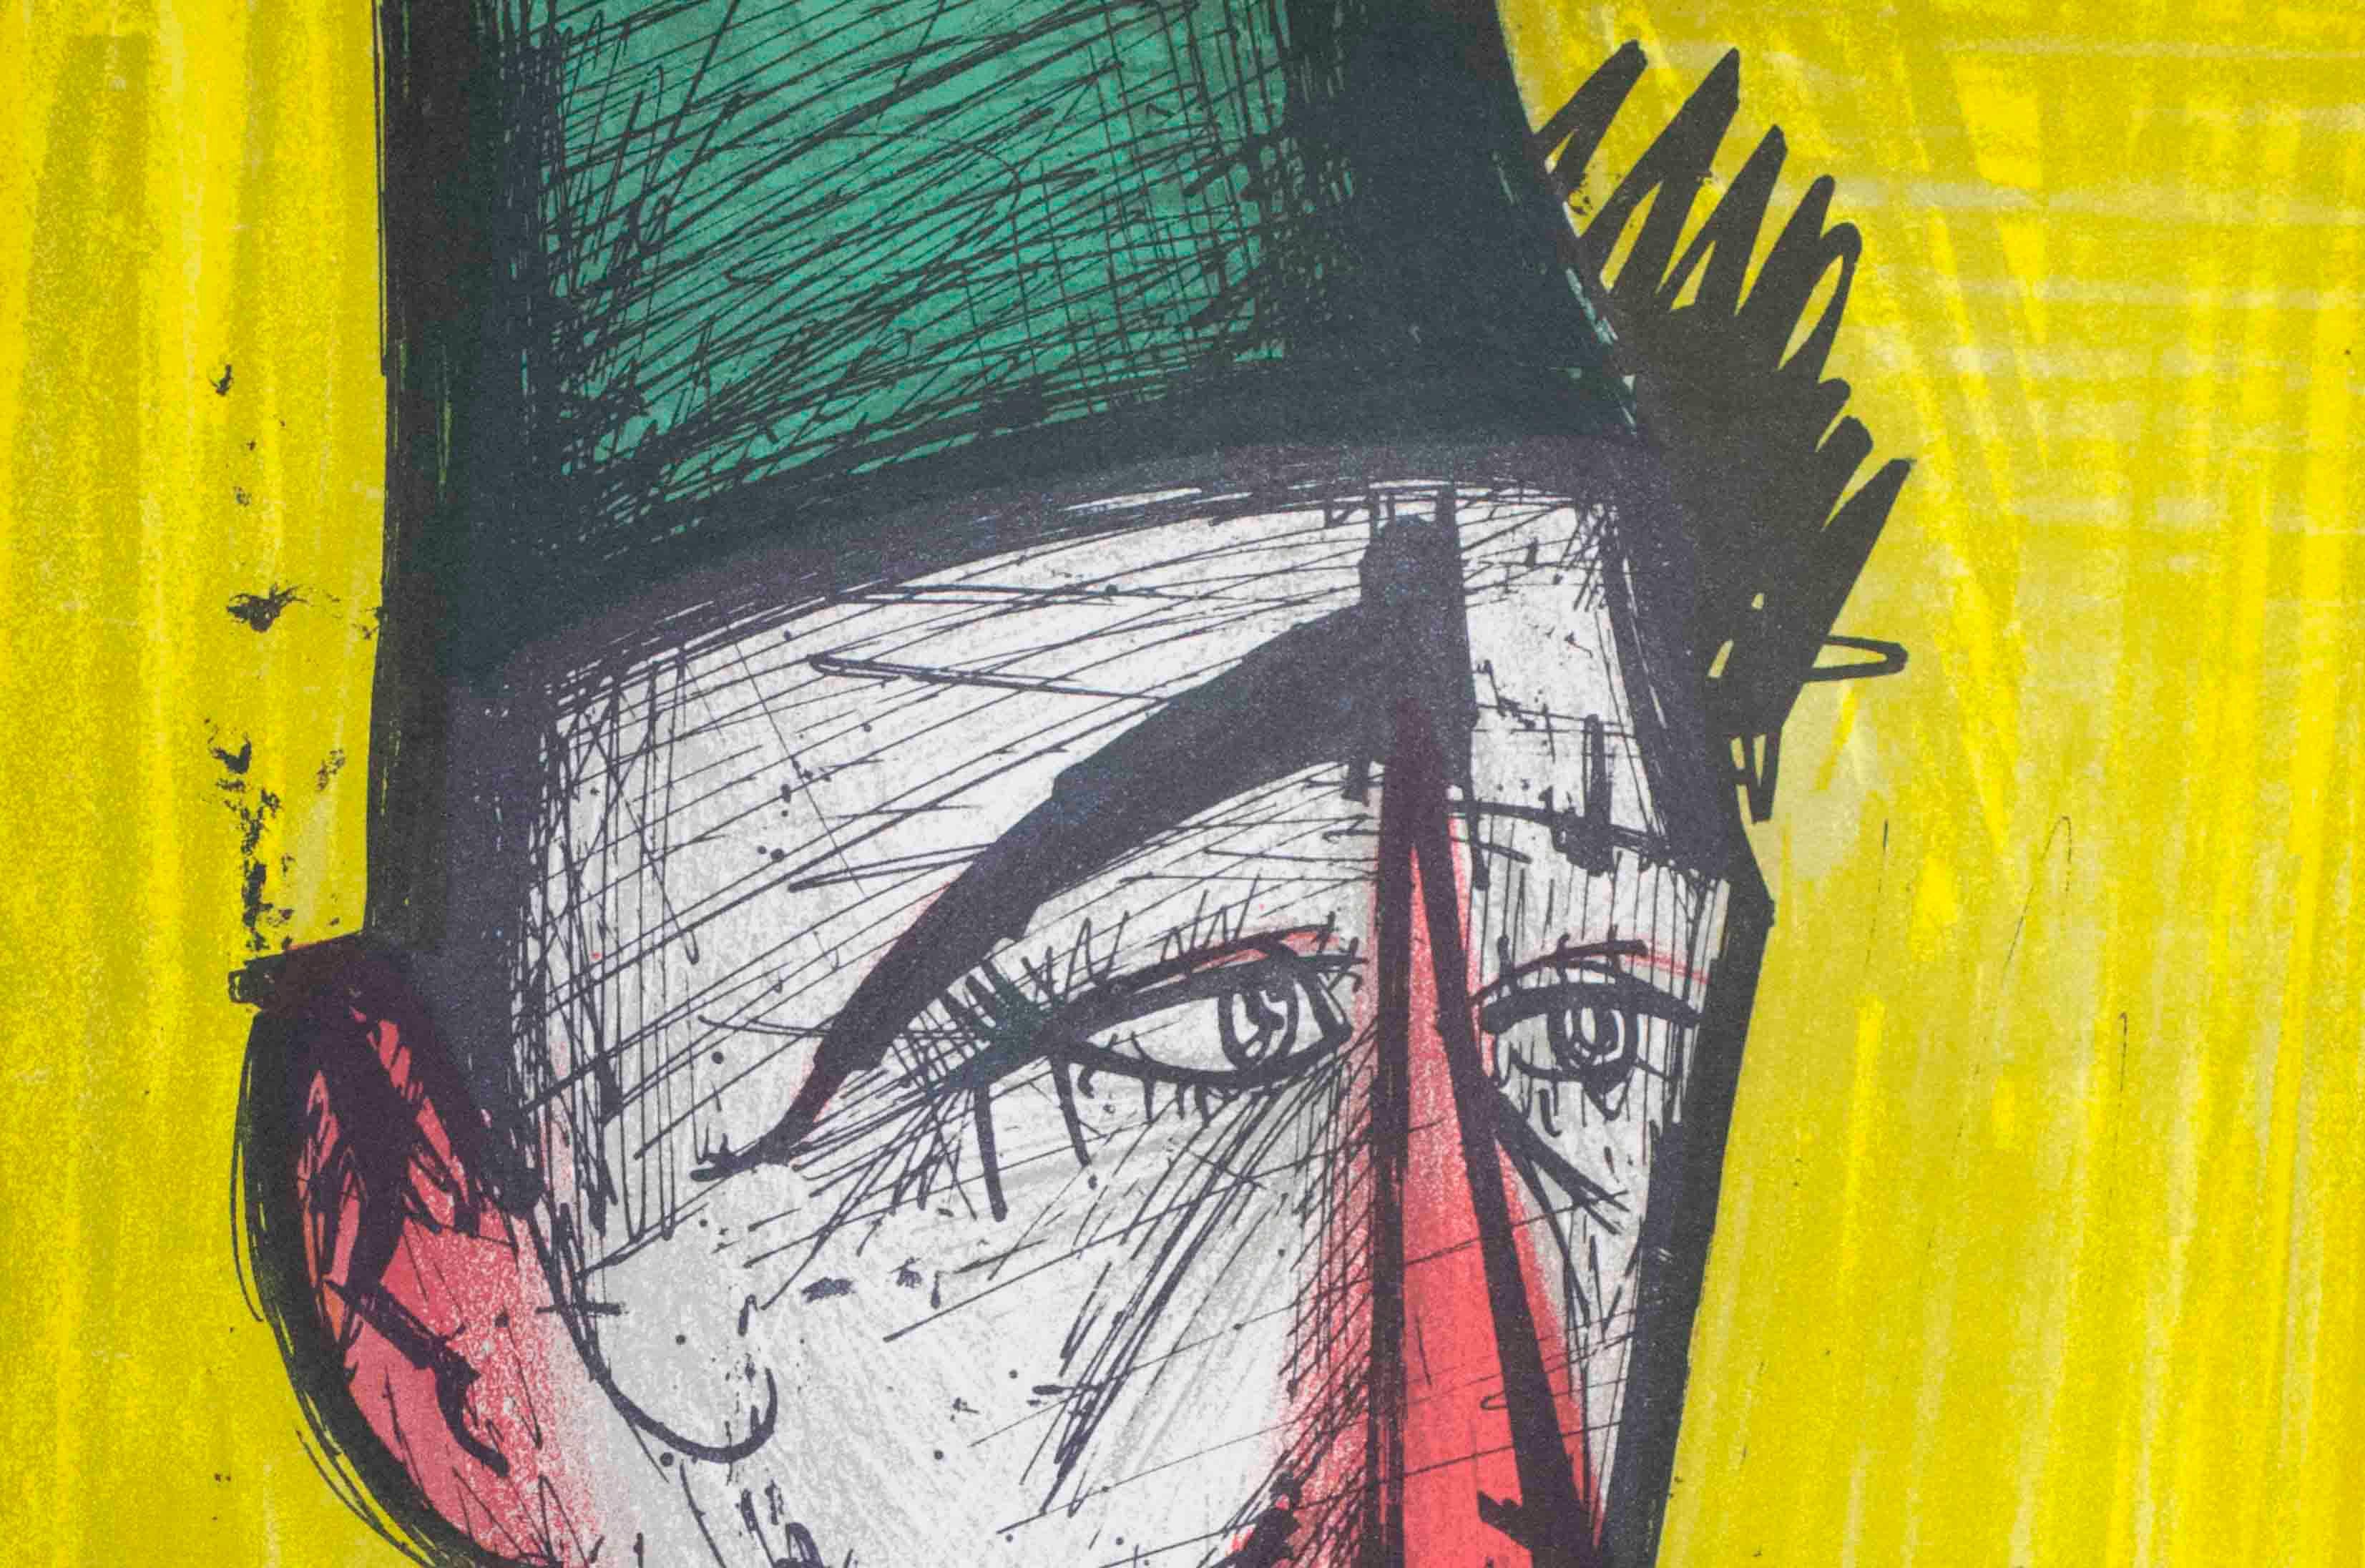 Clown (jaune) - Print de Bernard Buffet